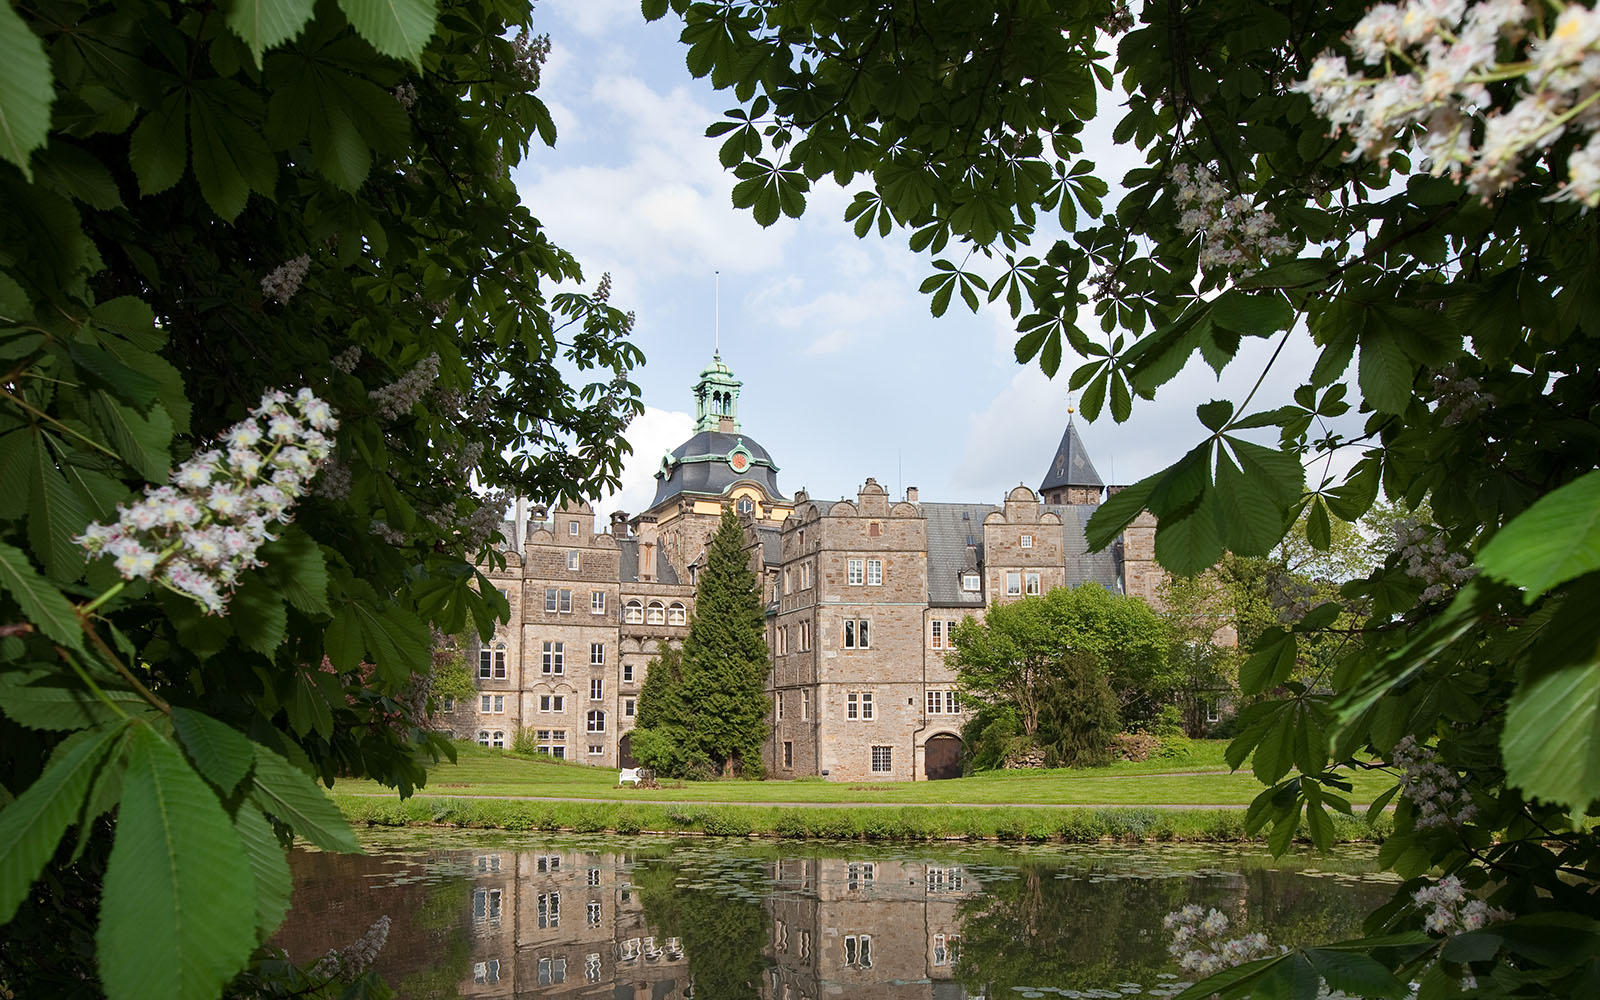 Wann wurde das Schloss in Bückeburg gebaut?